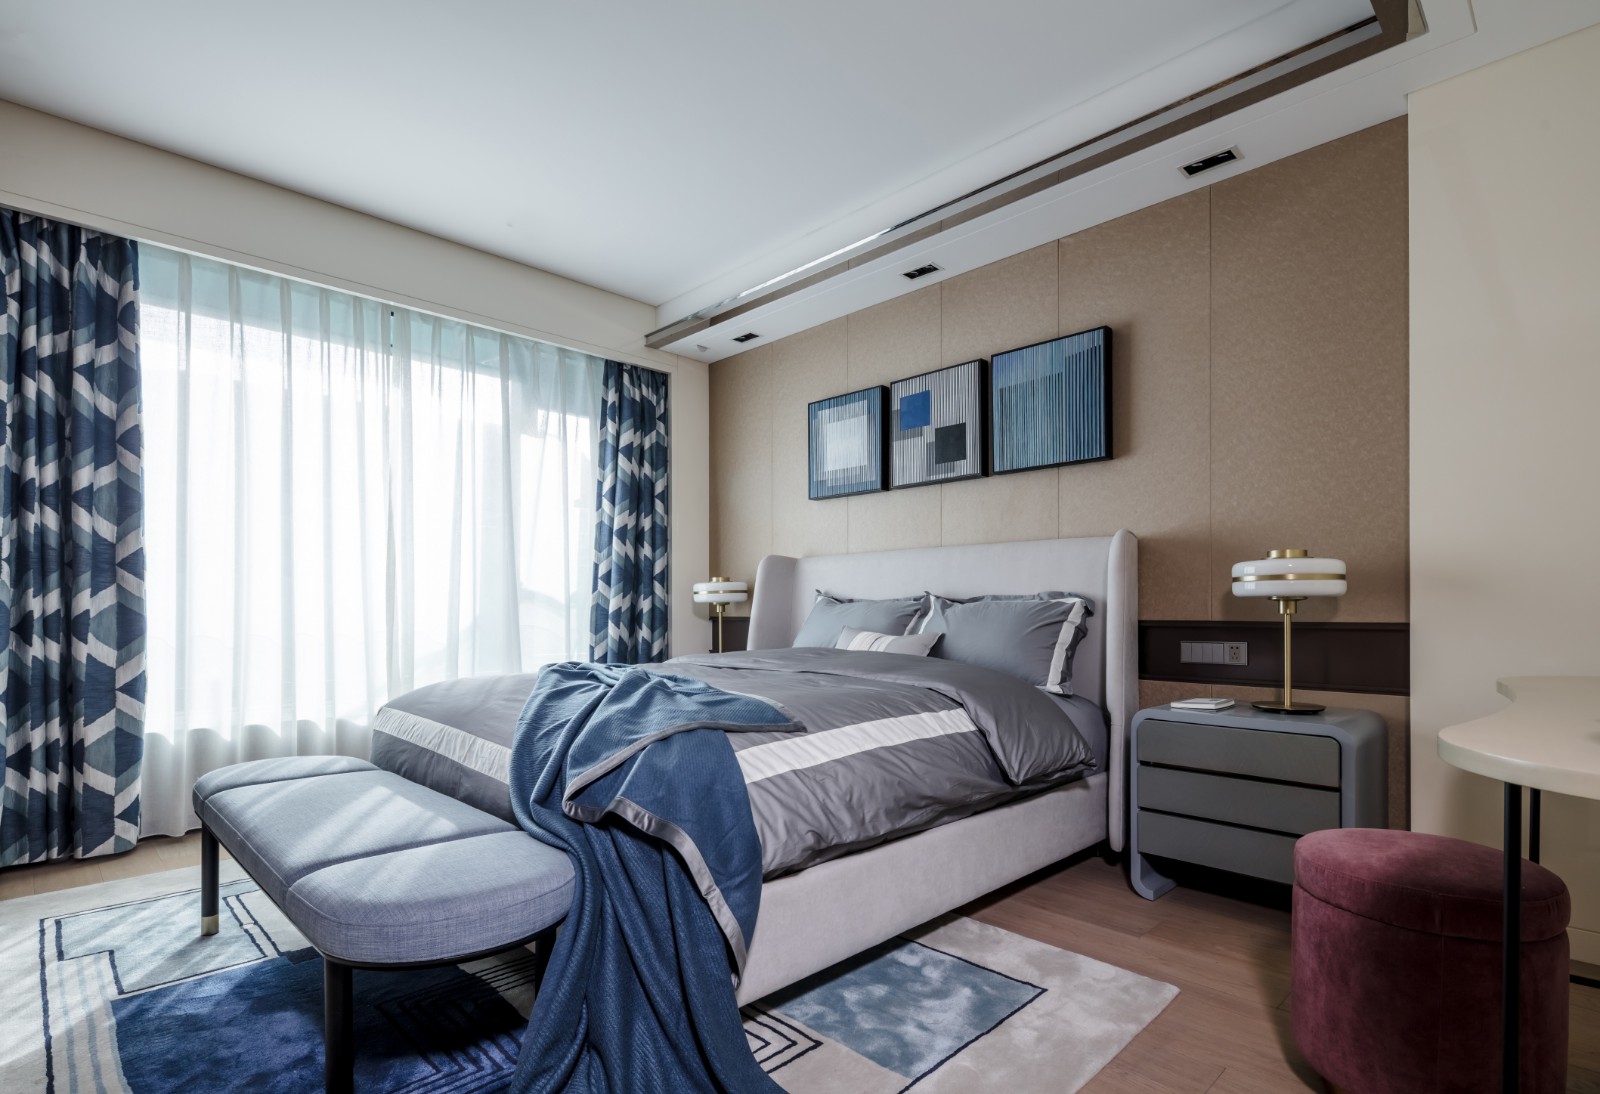 侧卧背景墙层次感强，搭配优雅的灰色床头和绸缎床品，营造出优雅清新感。